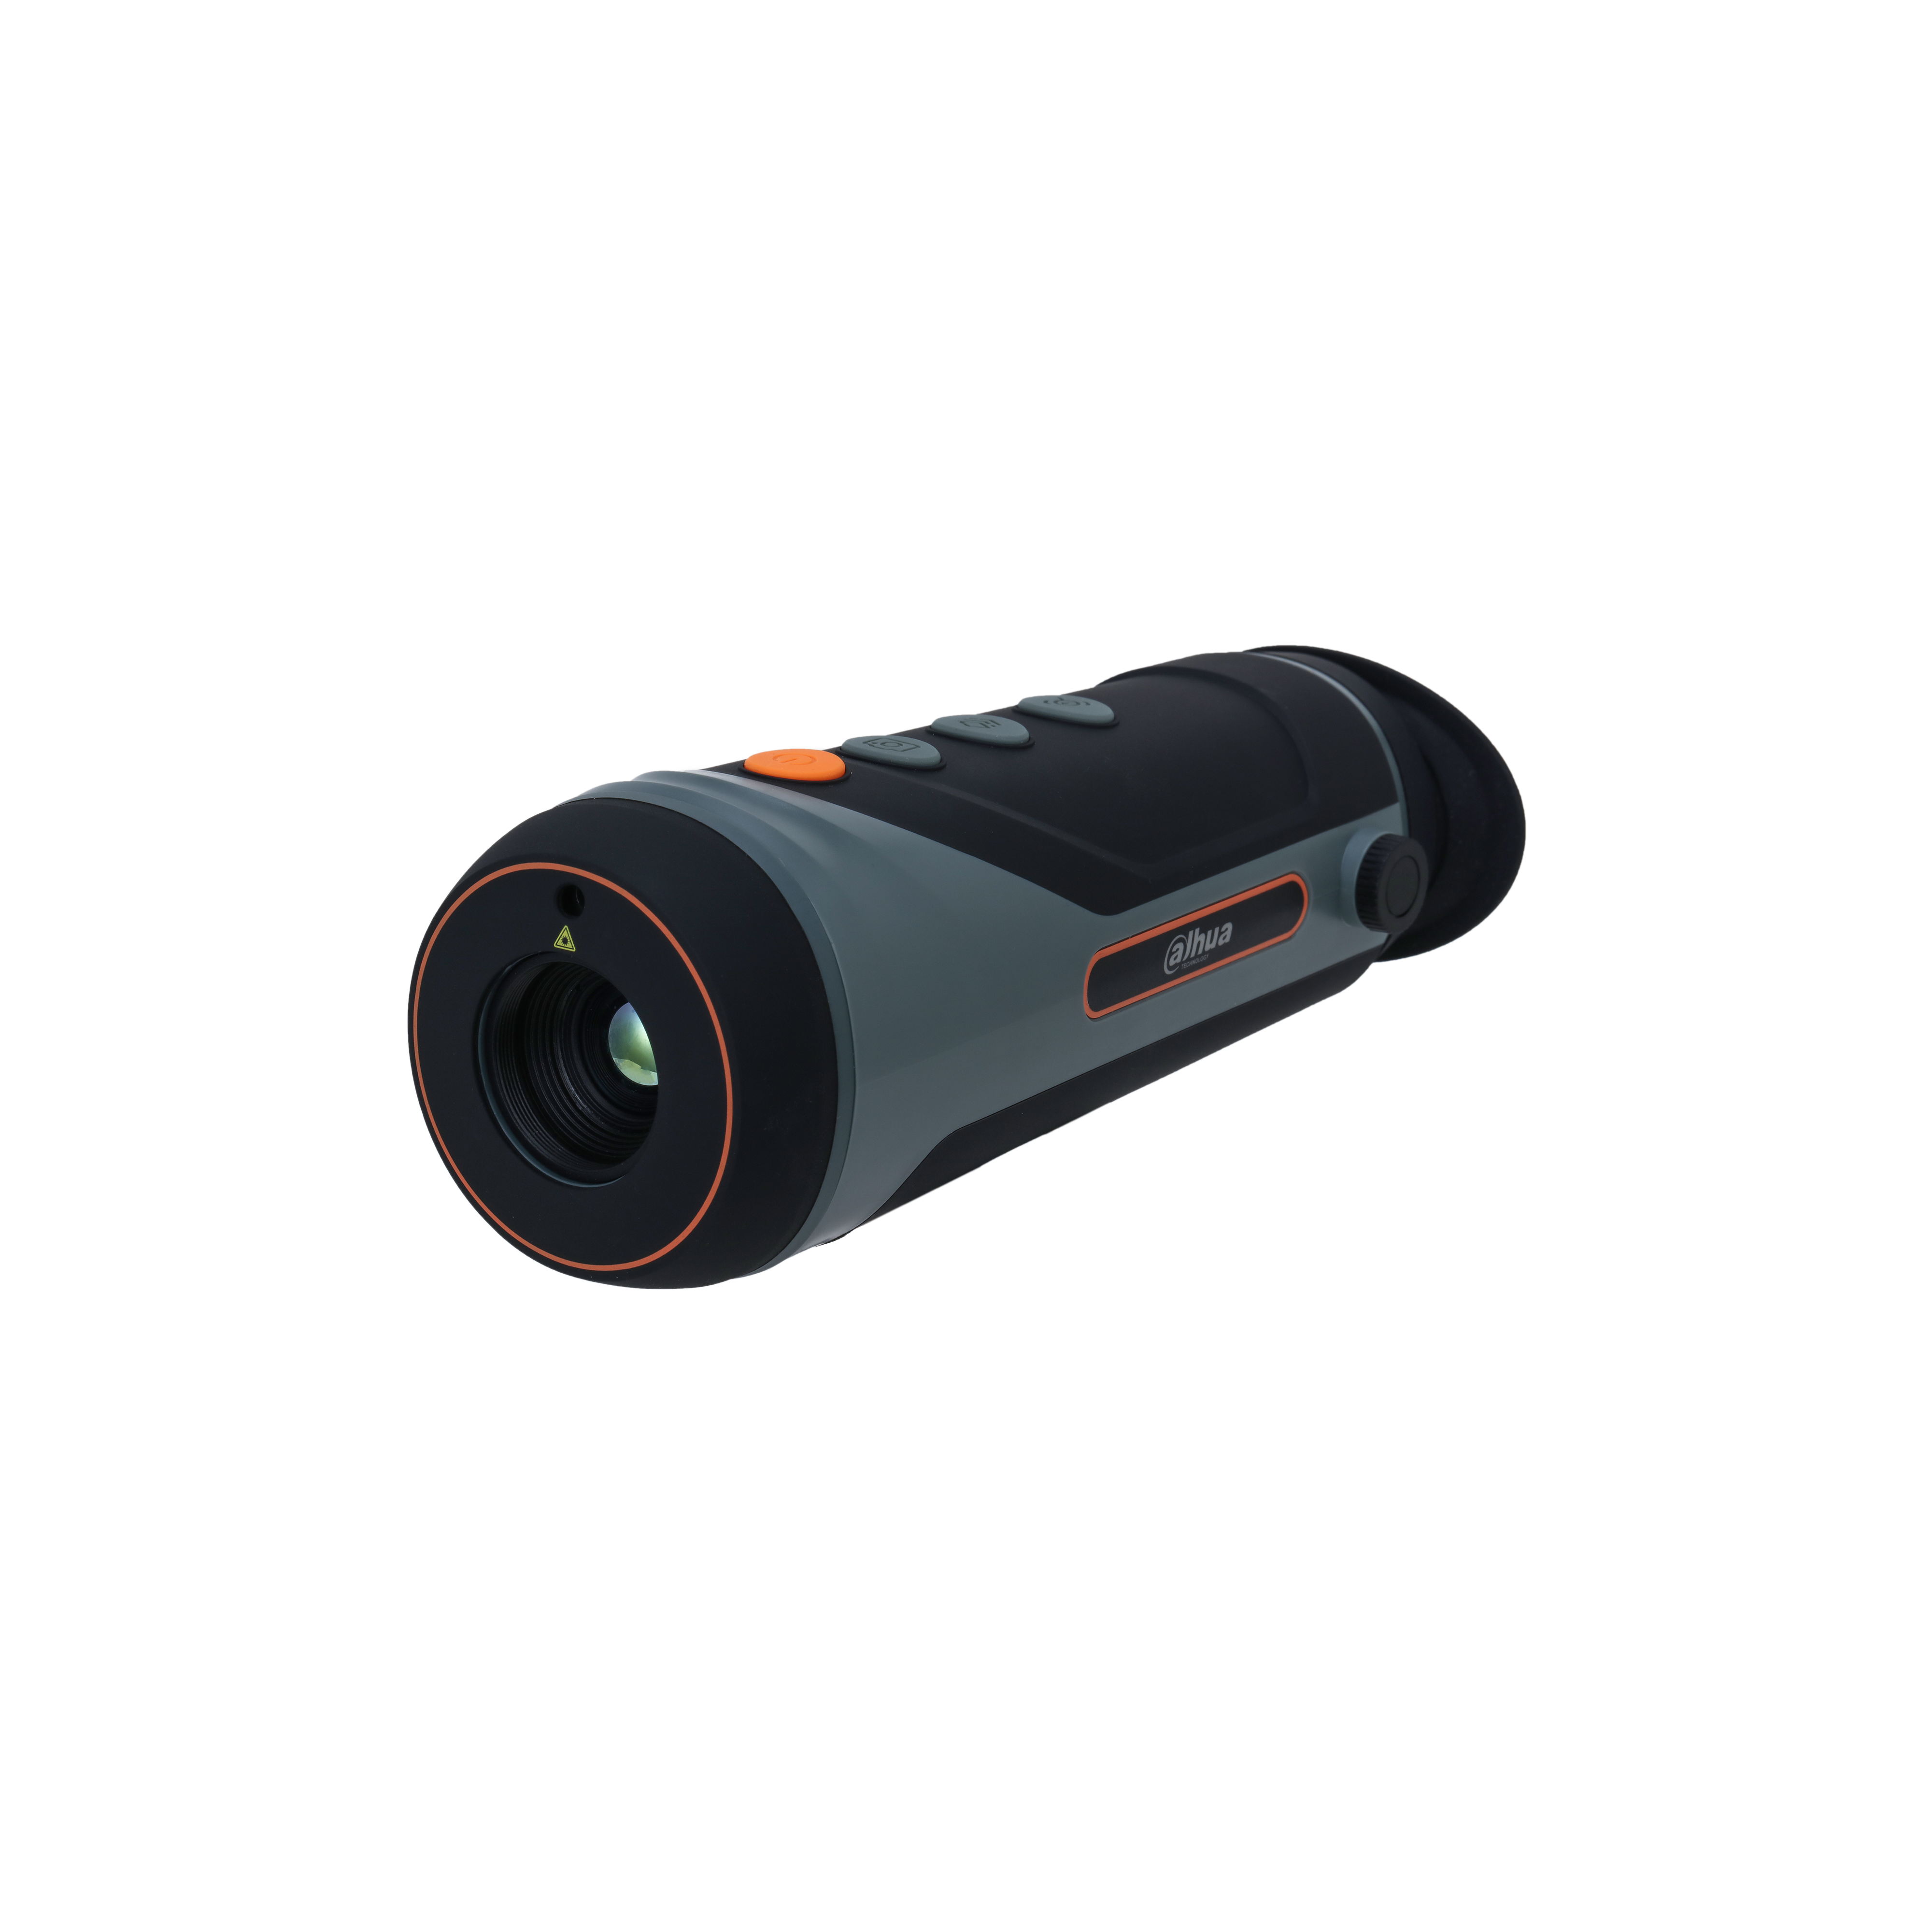 DAHUA TPC-M40  Thermal Monocular Camera